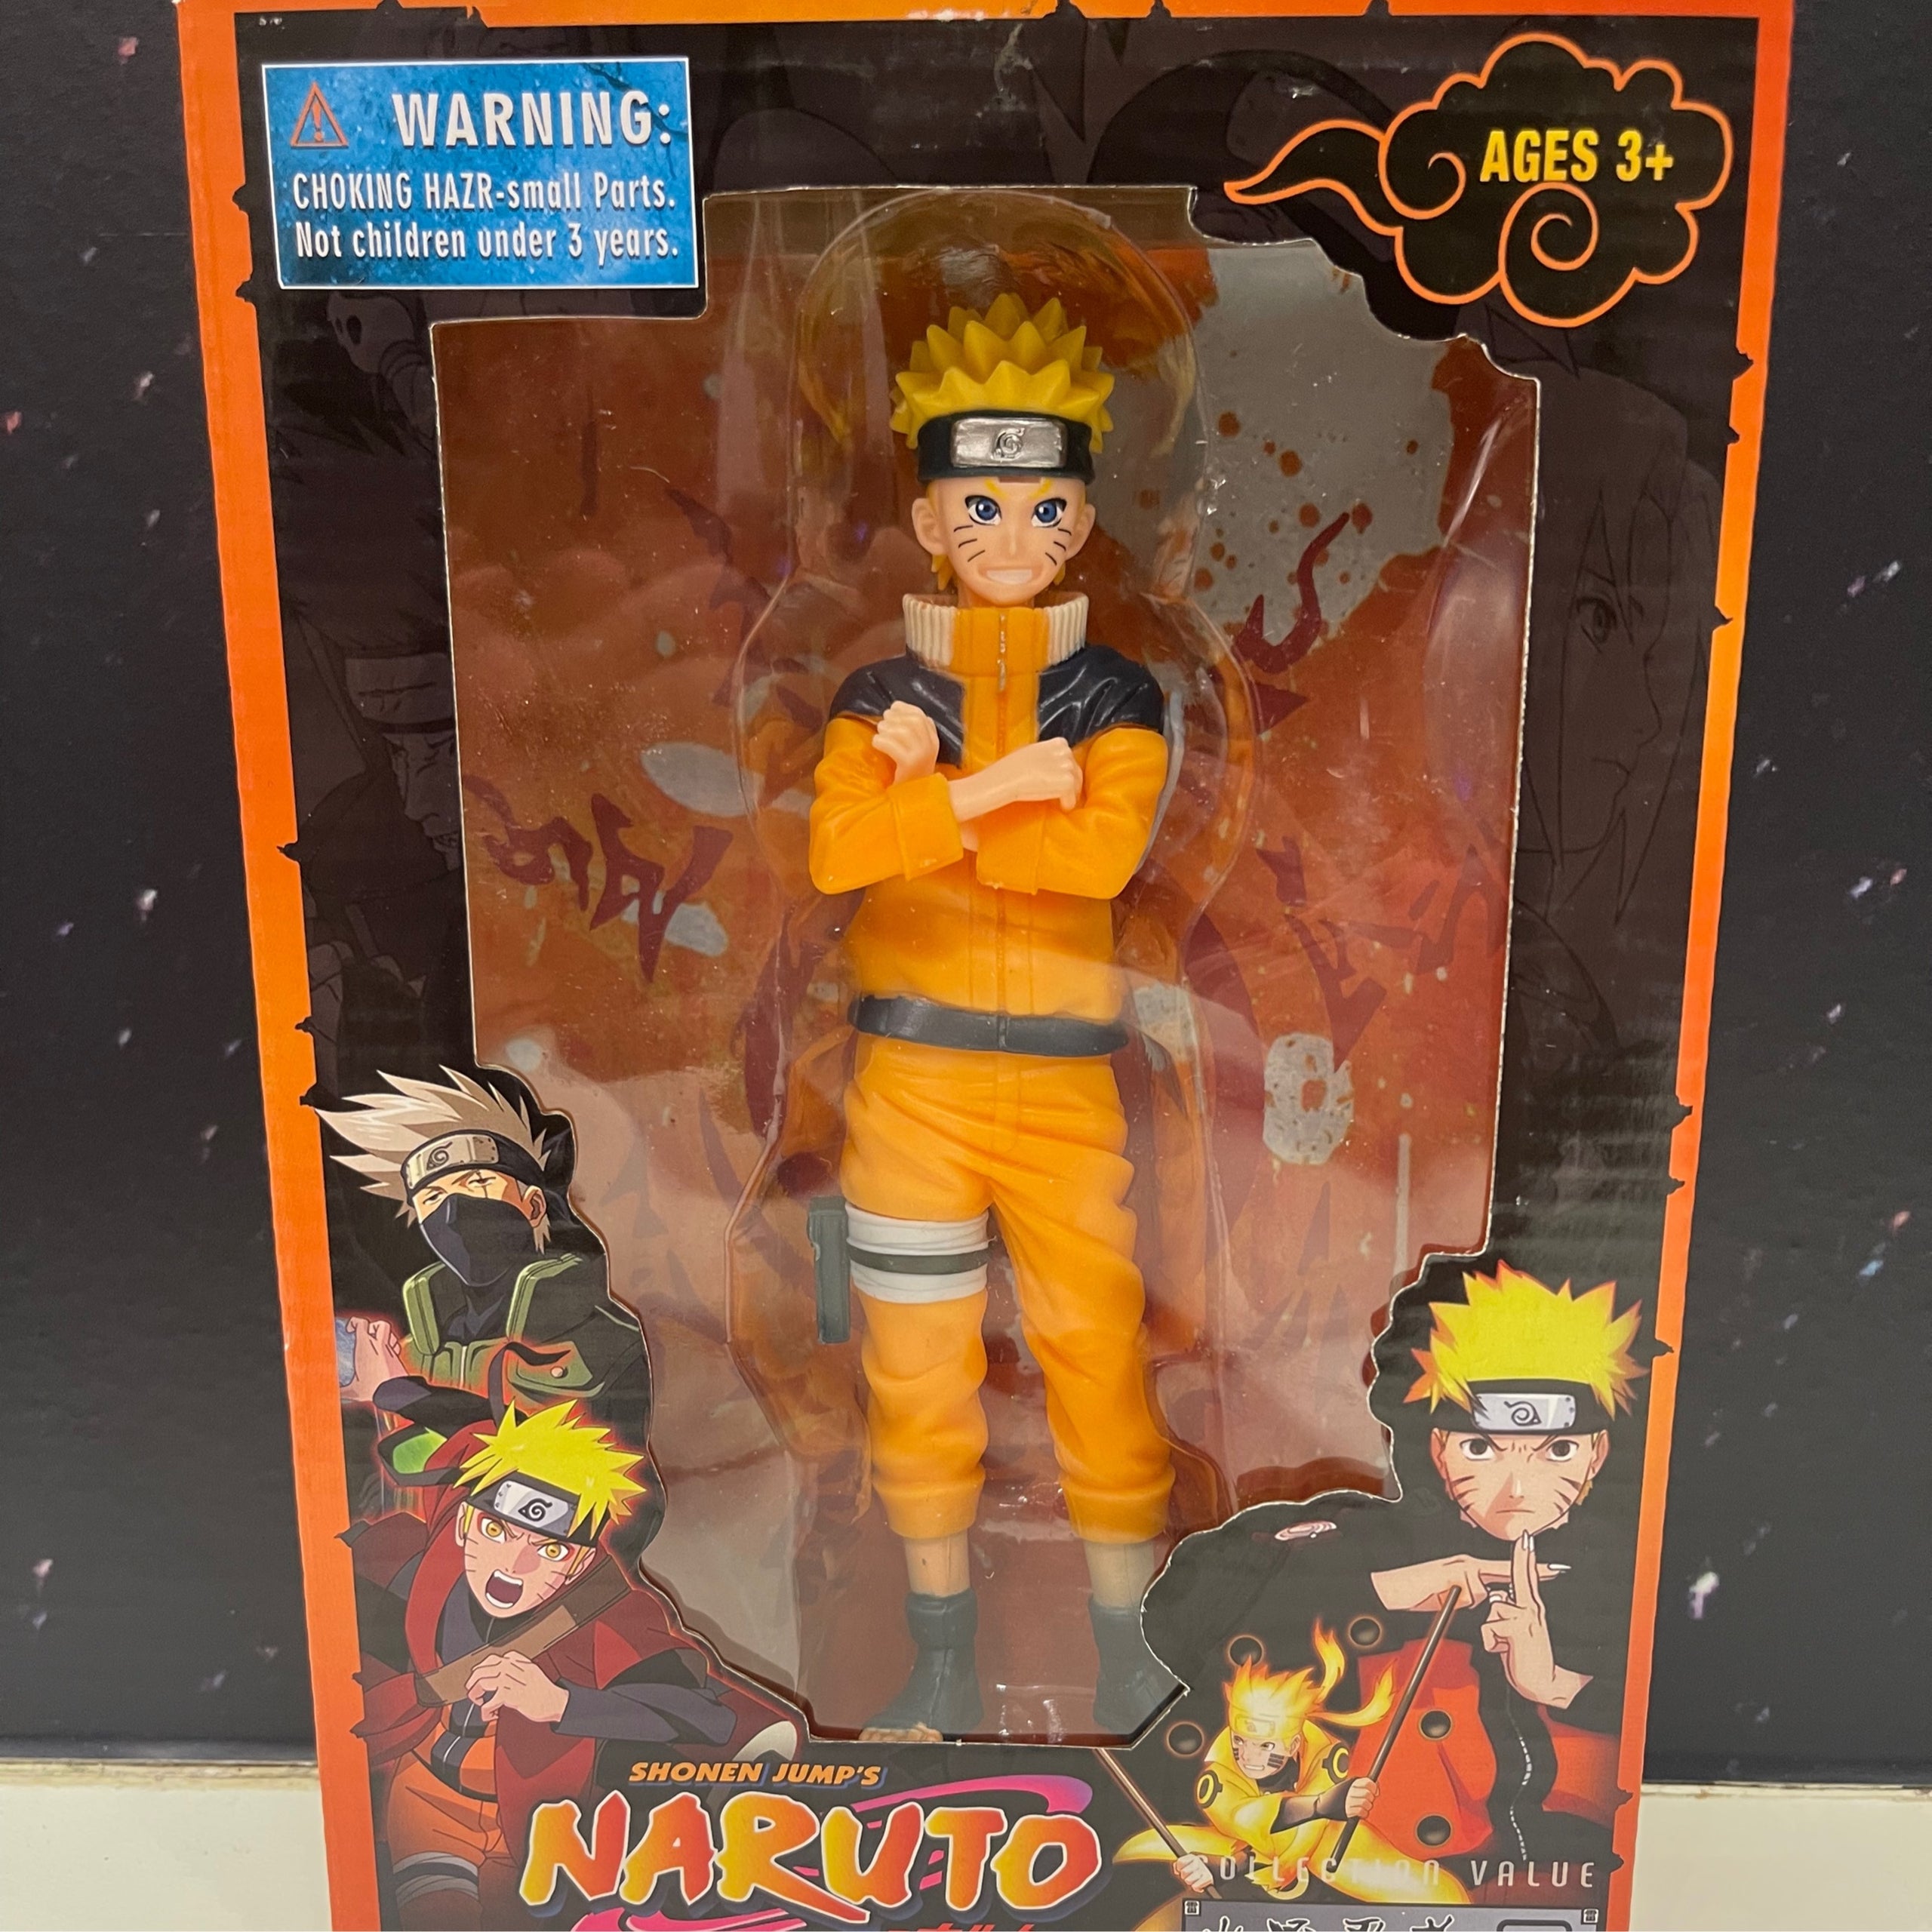 Uzumaki Naruto - Kid 2  Kid naruto, Naruto shippuden anime, Naruto uzumaki  shippuden